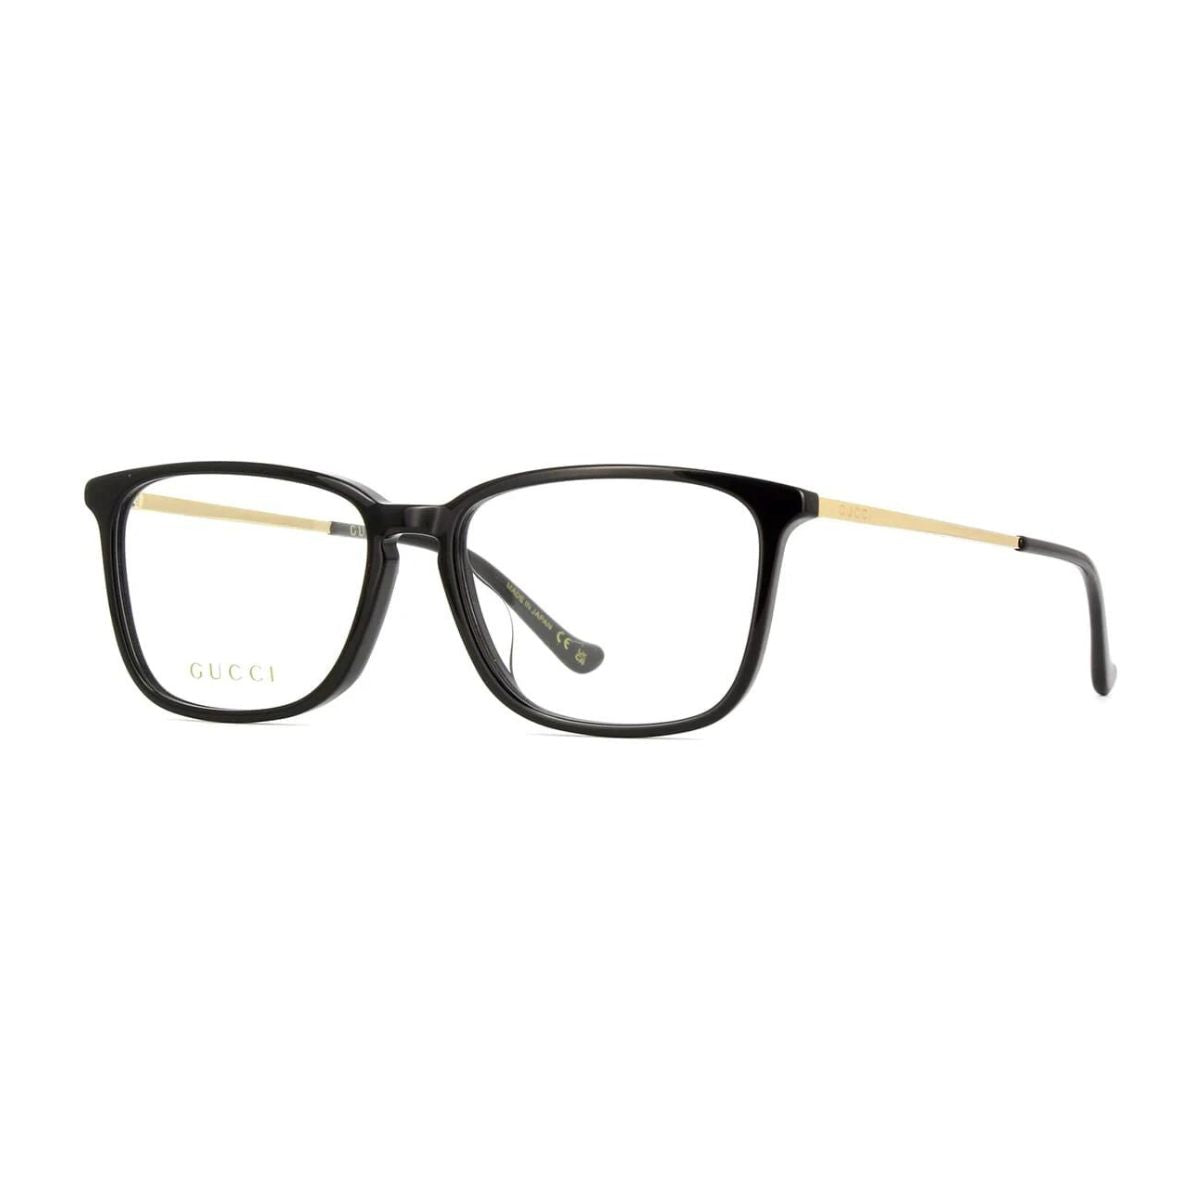 "Gucci GG1609OA 001 eyesight glasses frame for men's at optorium"